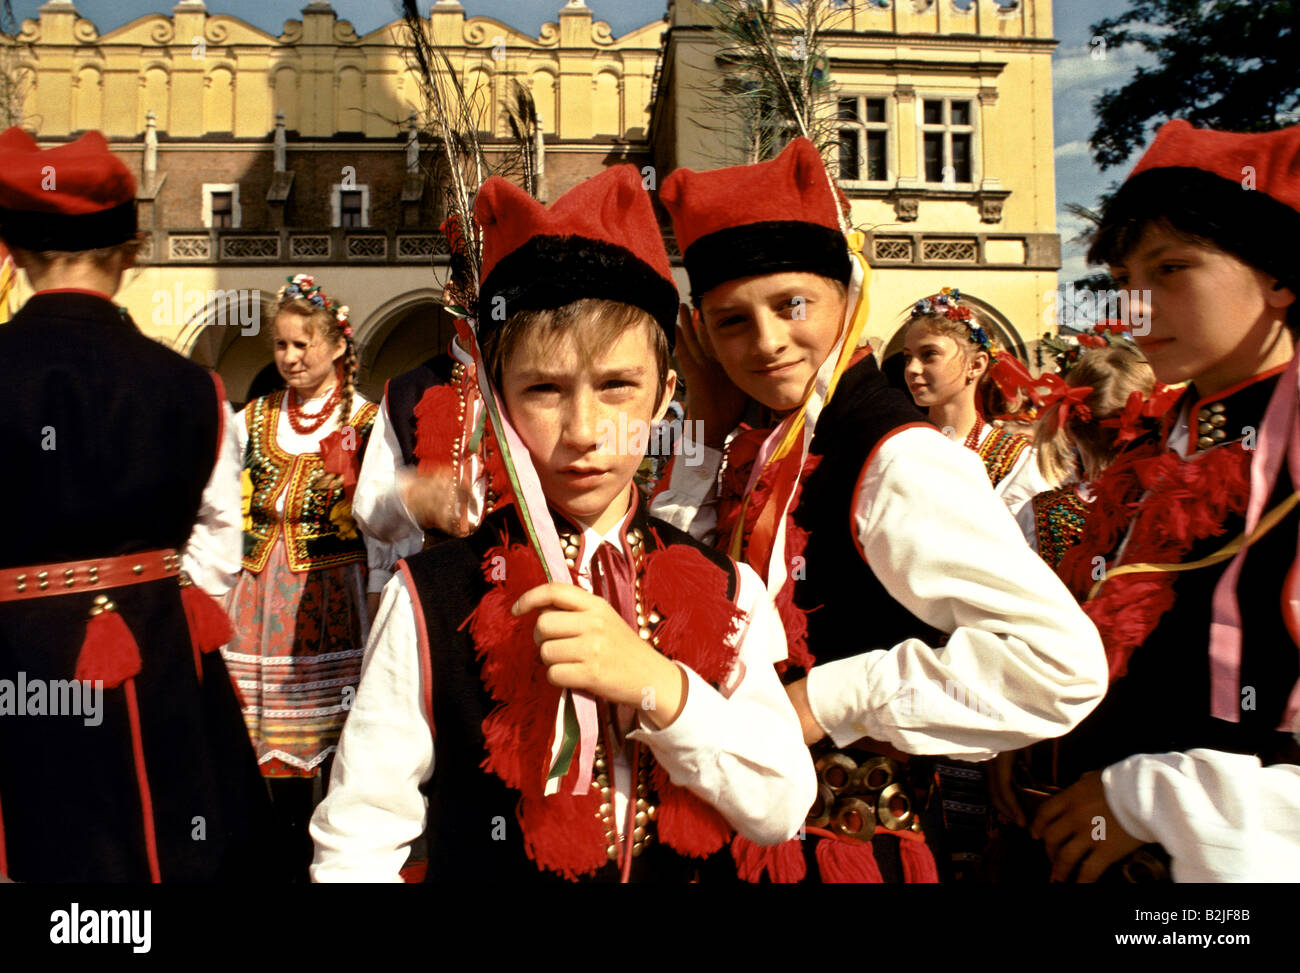 Boy wearing costume traditionnel à un Midsummer Festival en Pologne Banque D'Images